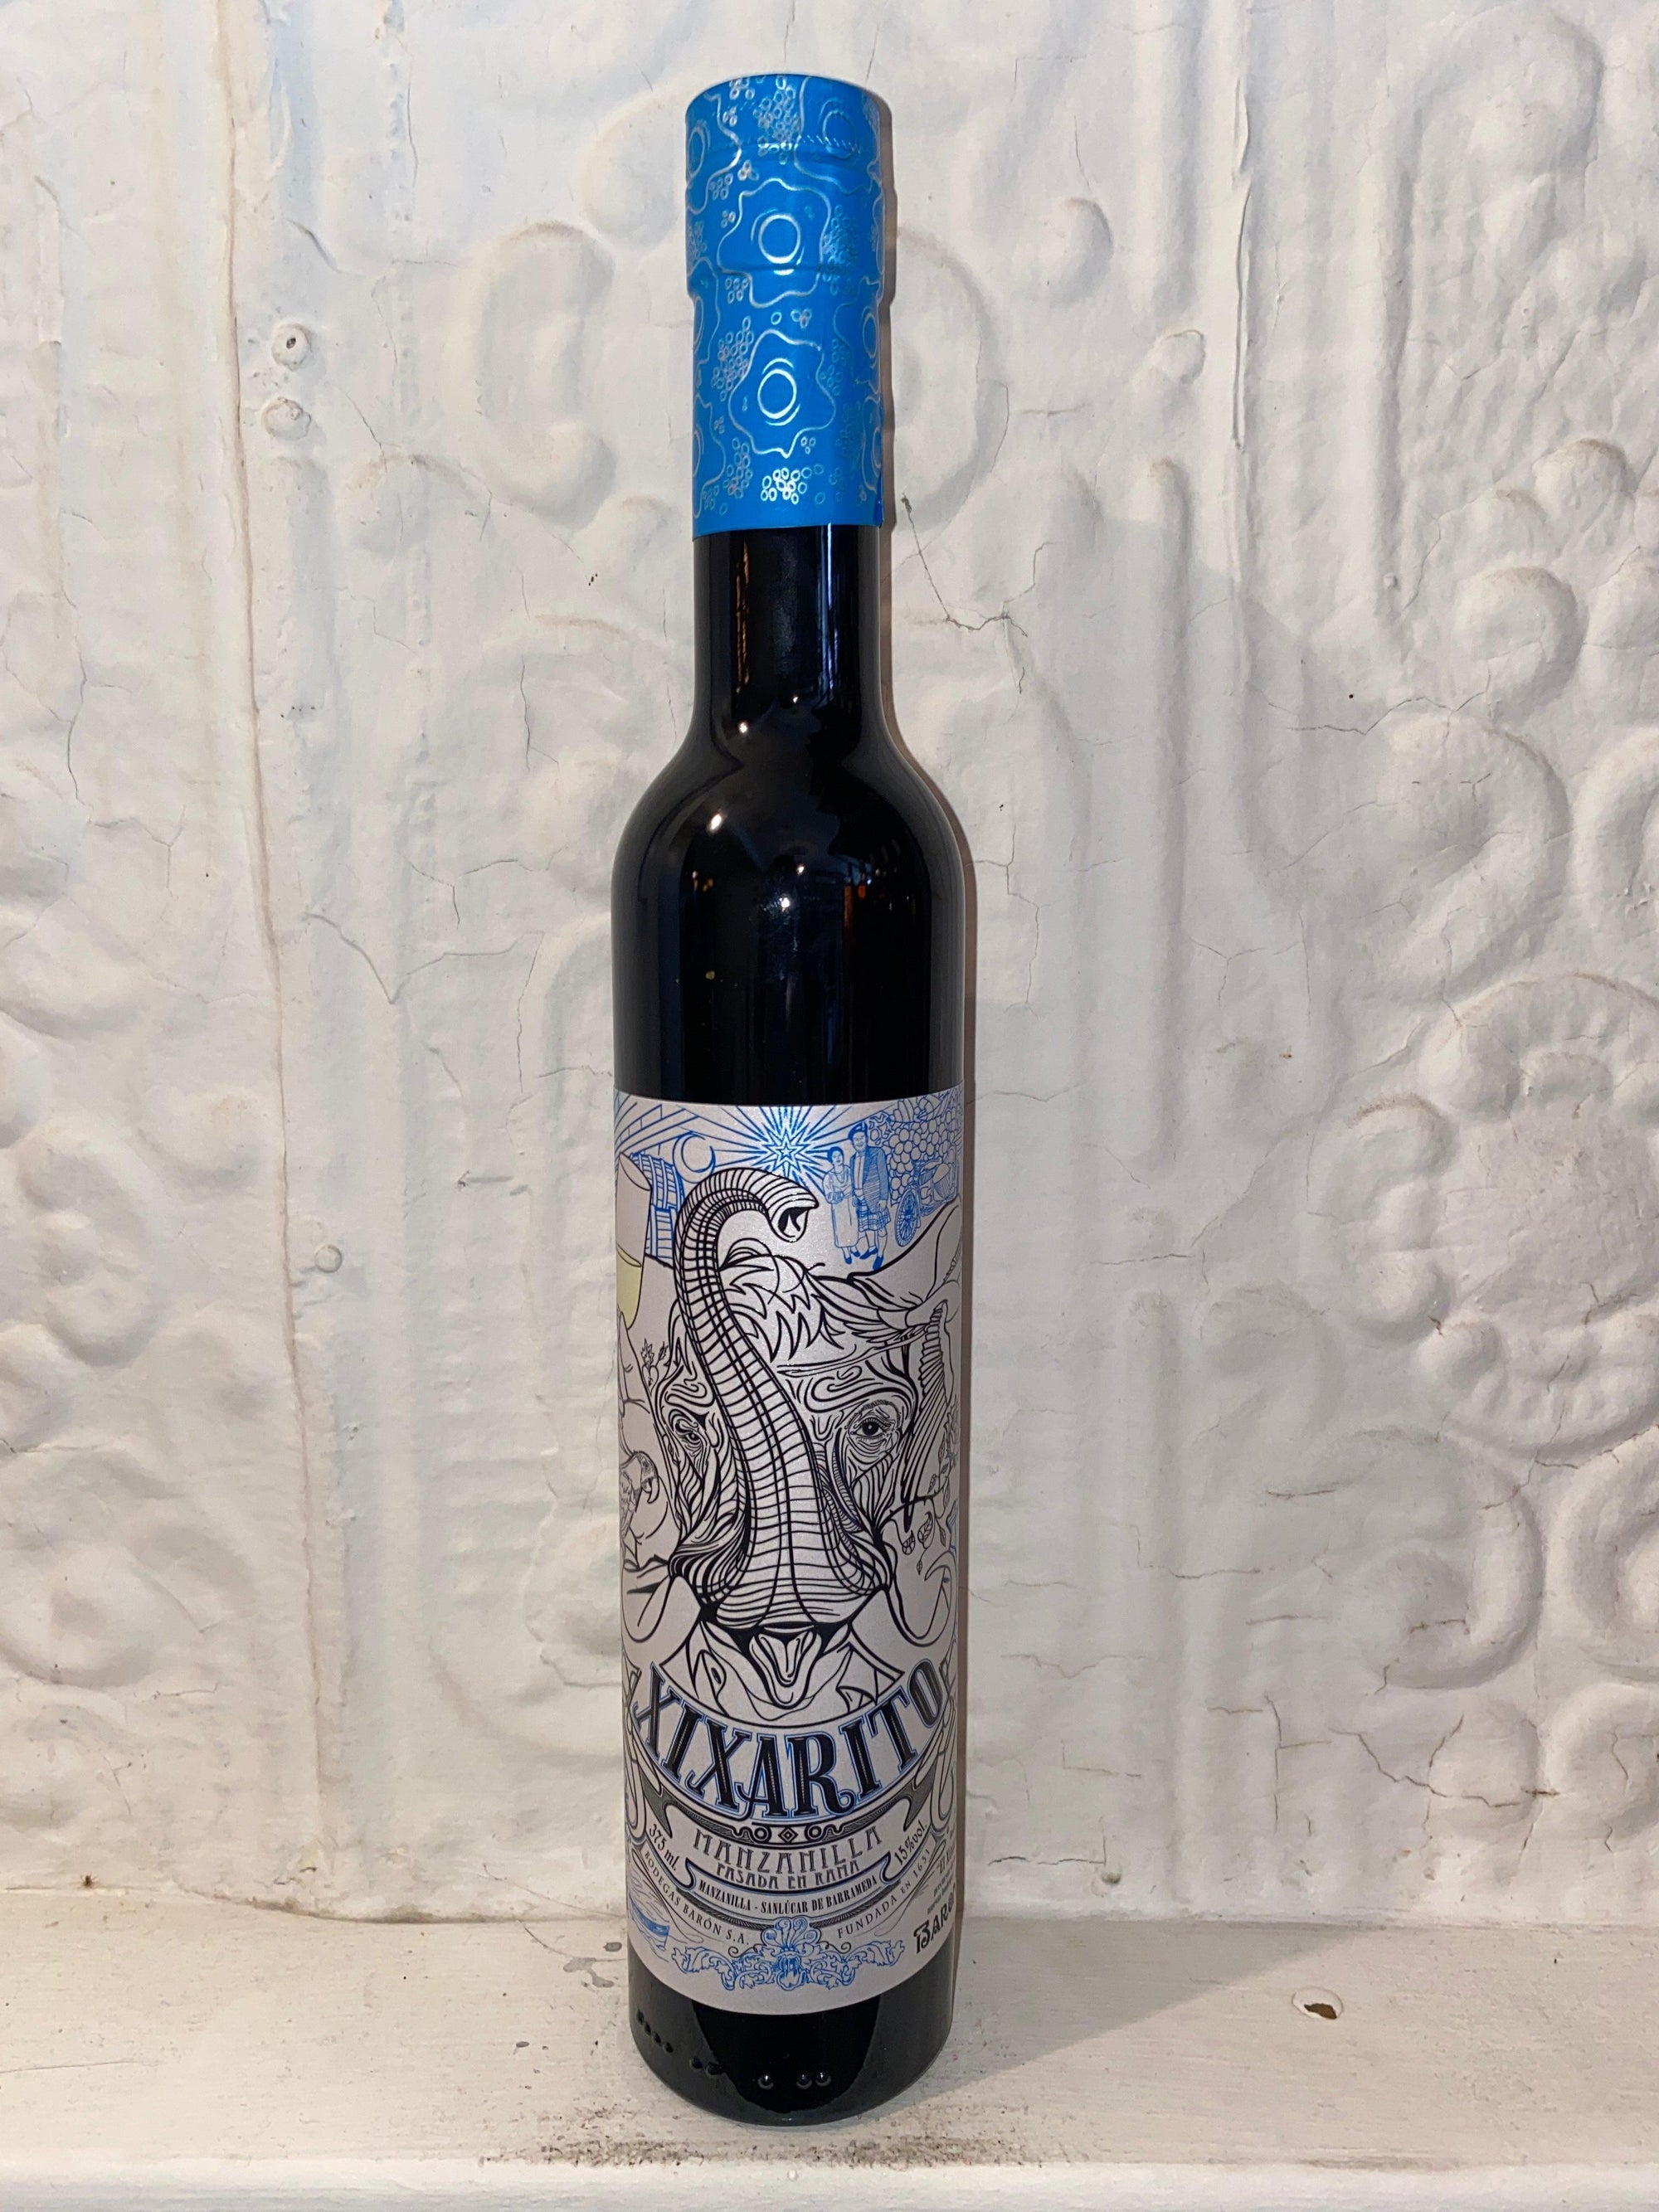 Xixarito Manzanilla en Rama, Bodegas Baron NV (Andalusia, Spain)-Wine-Bibber & Bell